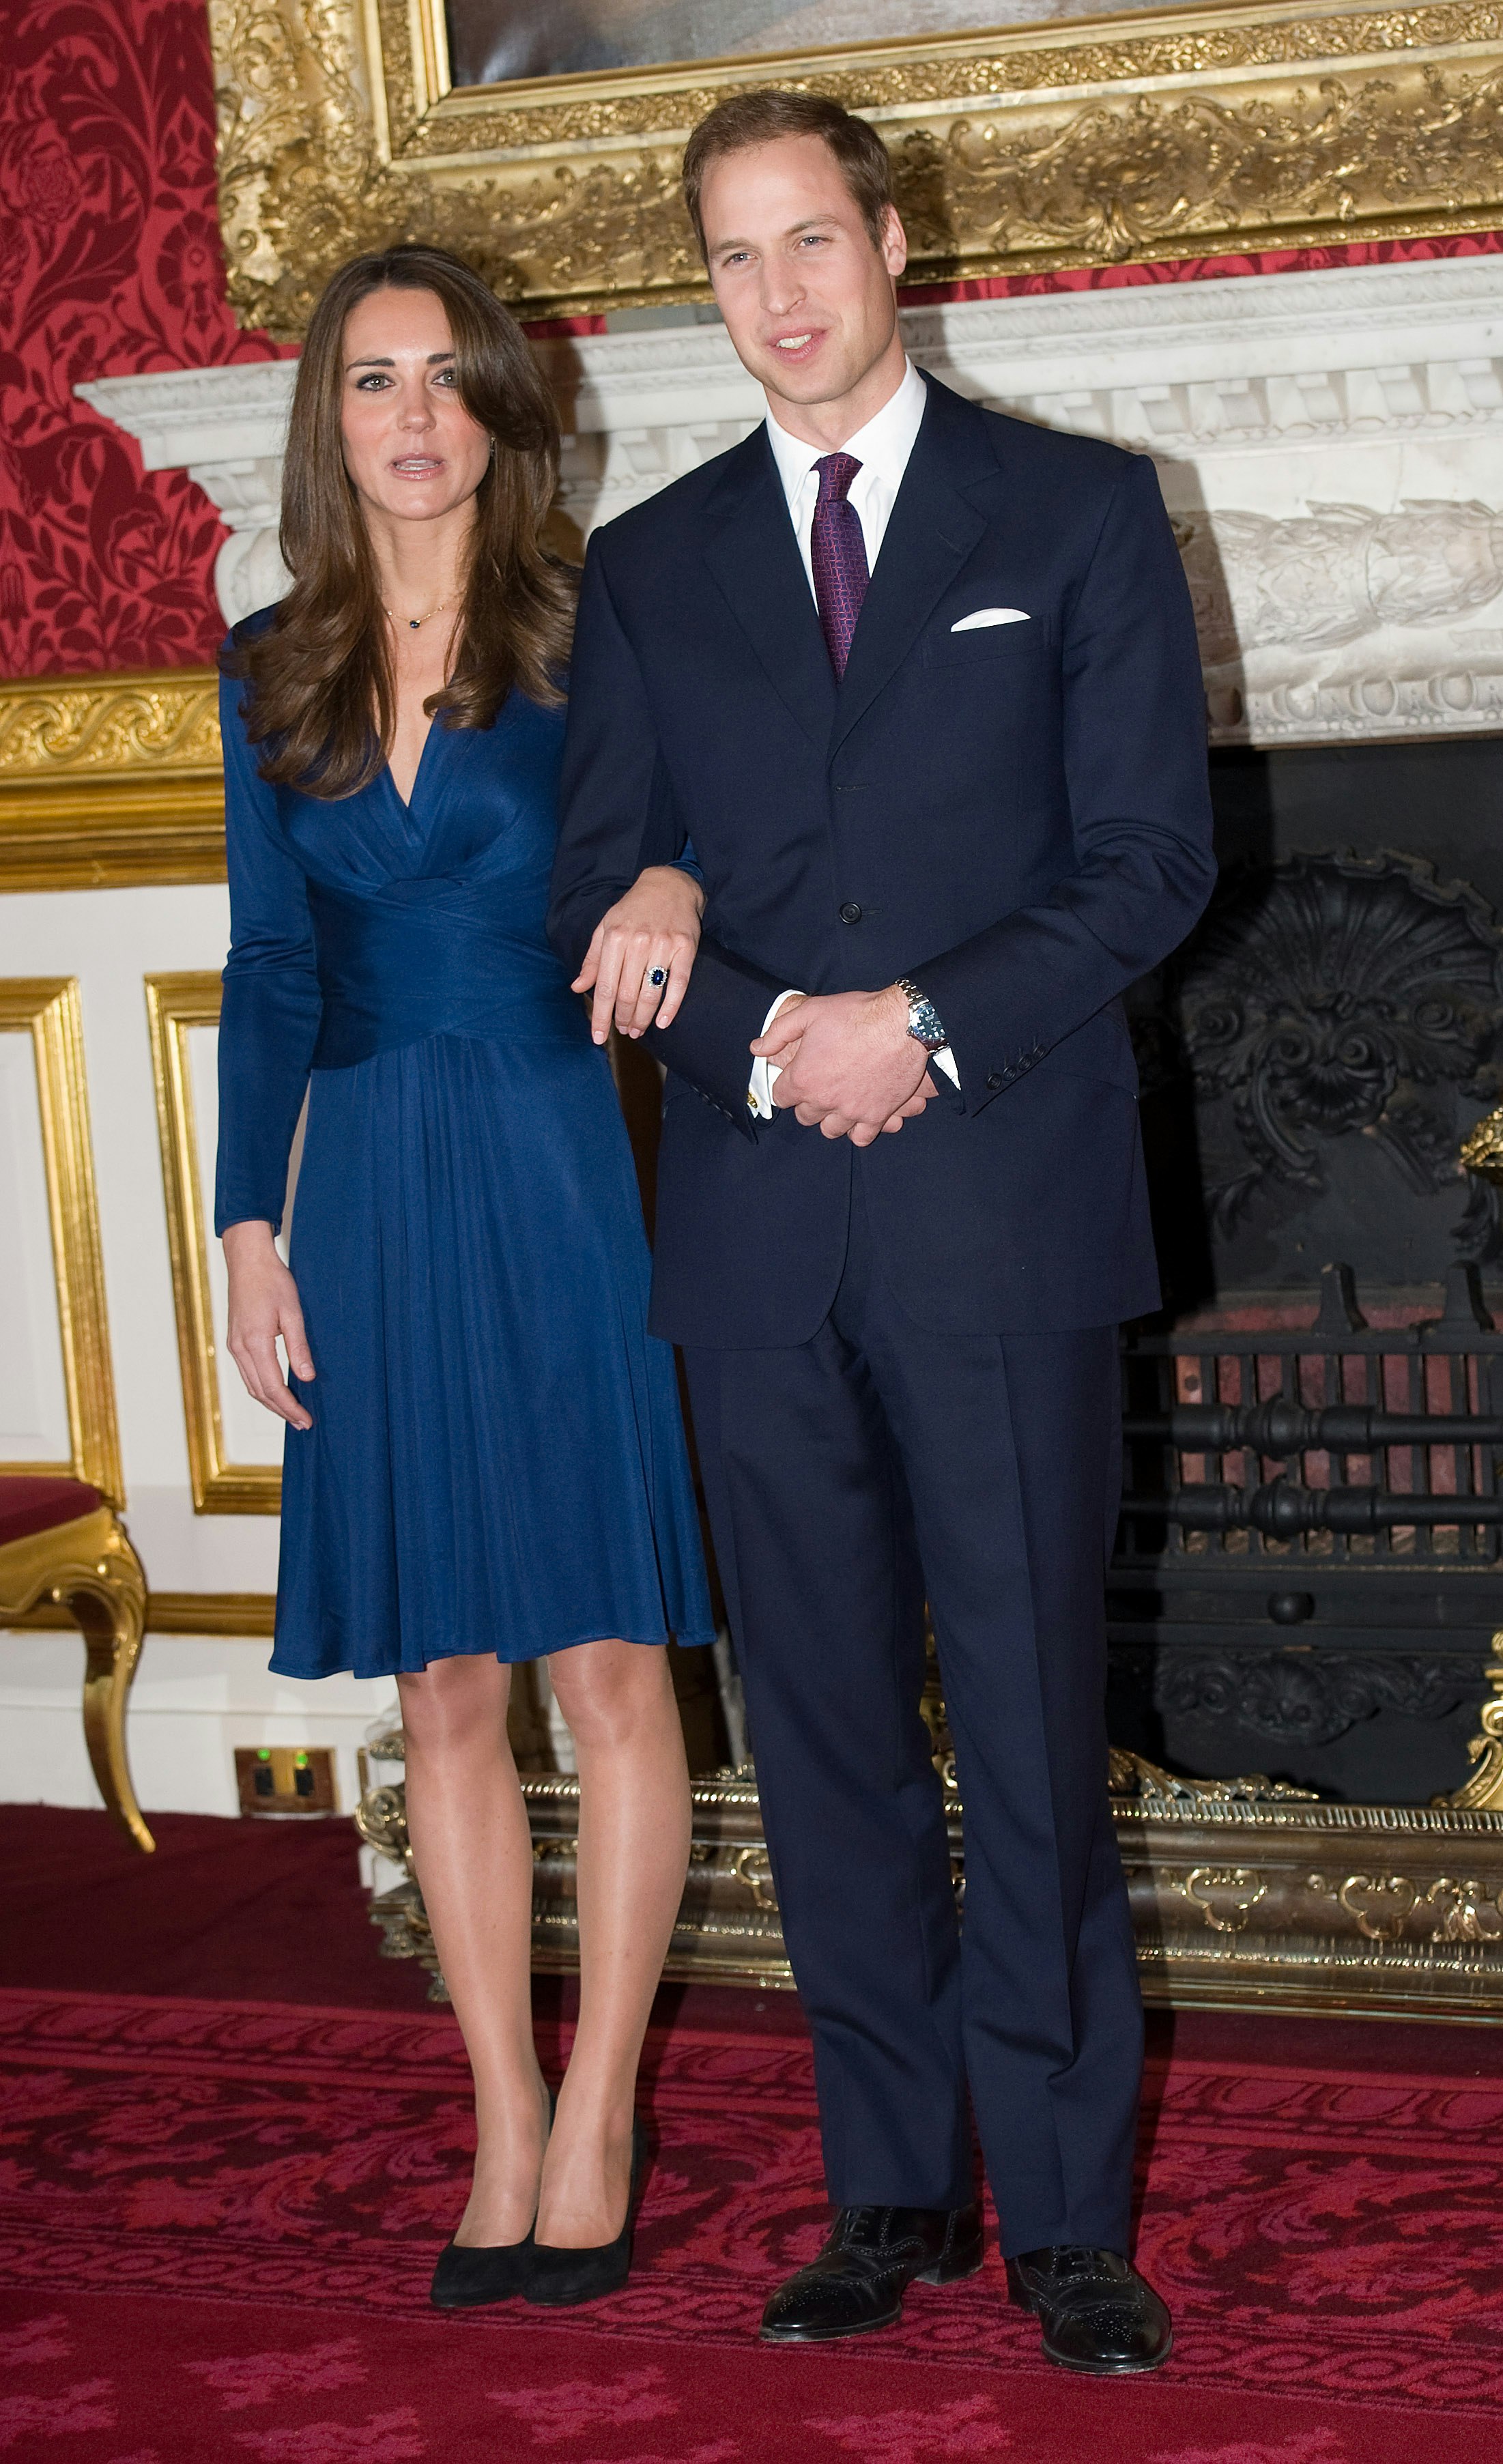 indrømmer: Så akavet det første møde med prins William | SE og HØR